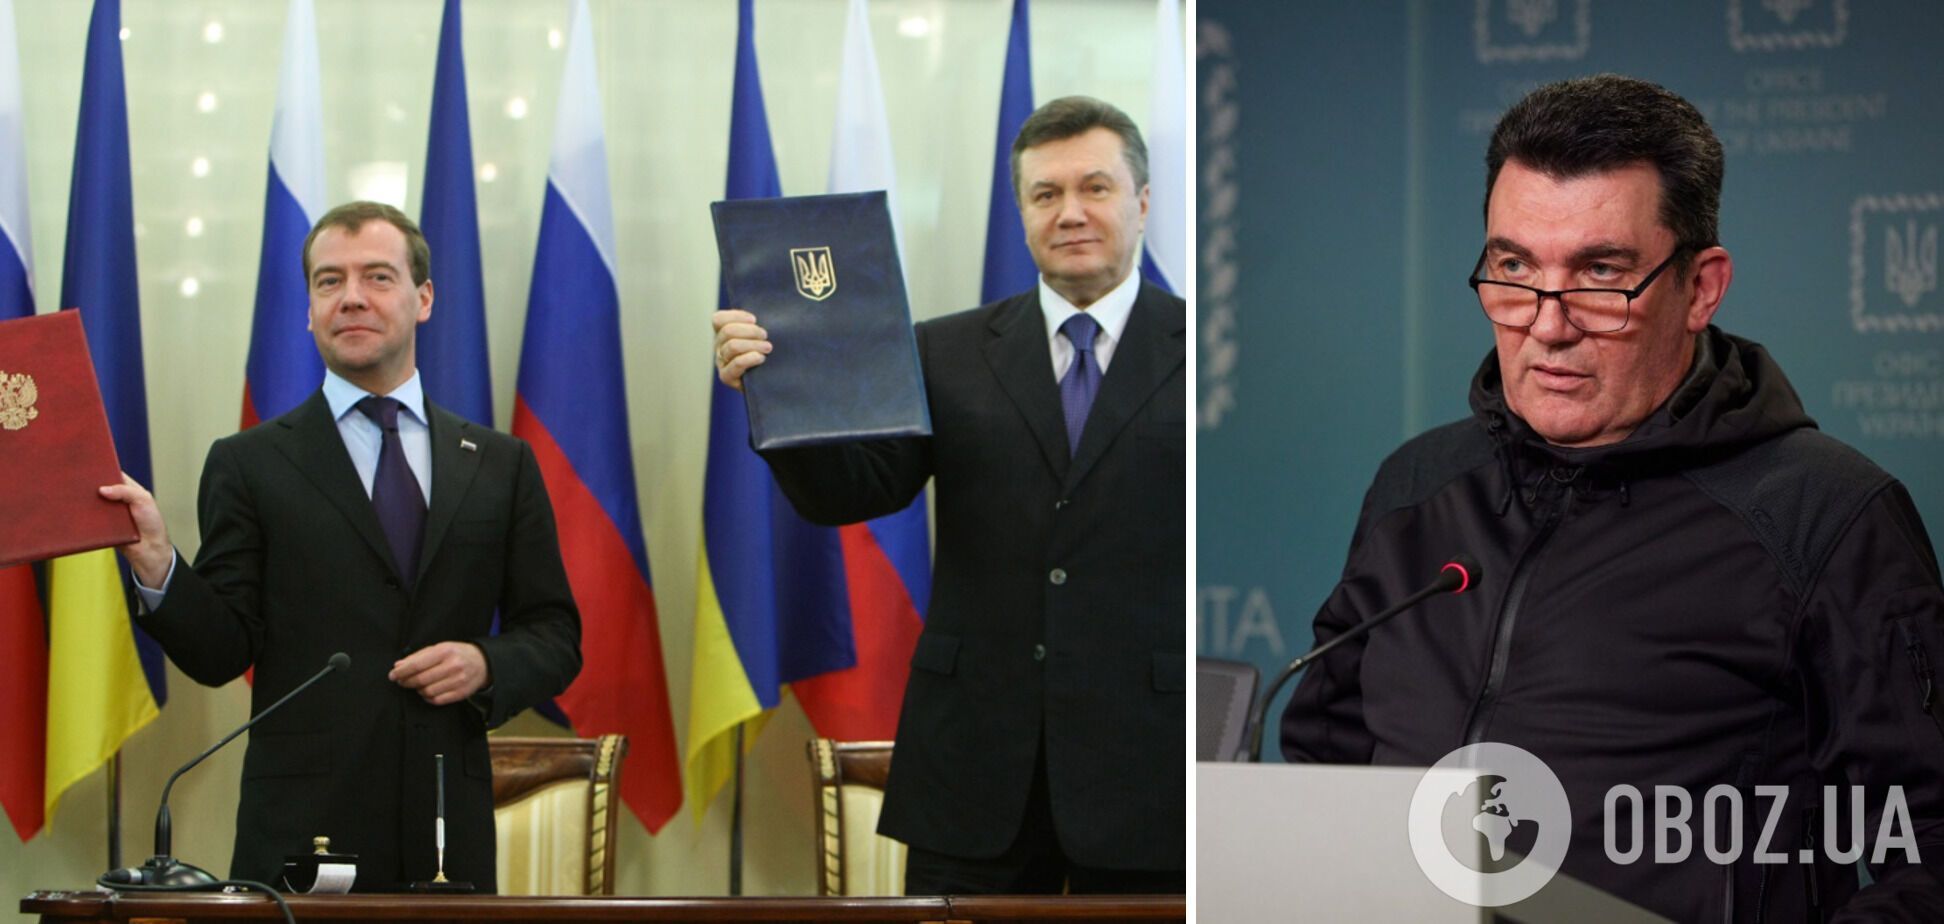 Харківські угоди підписали Янукович і Медведєв